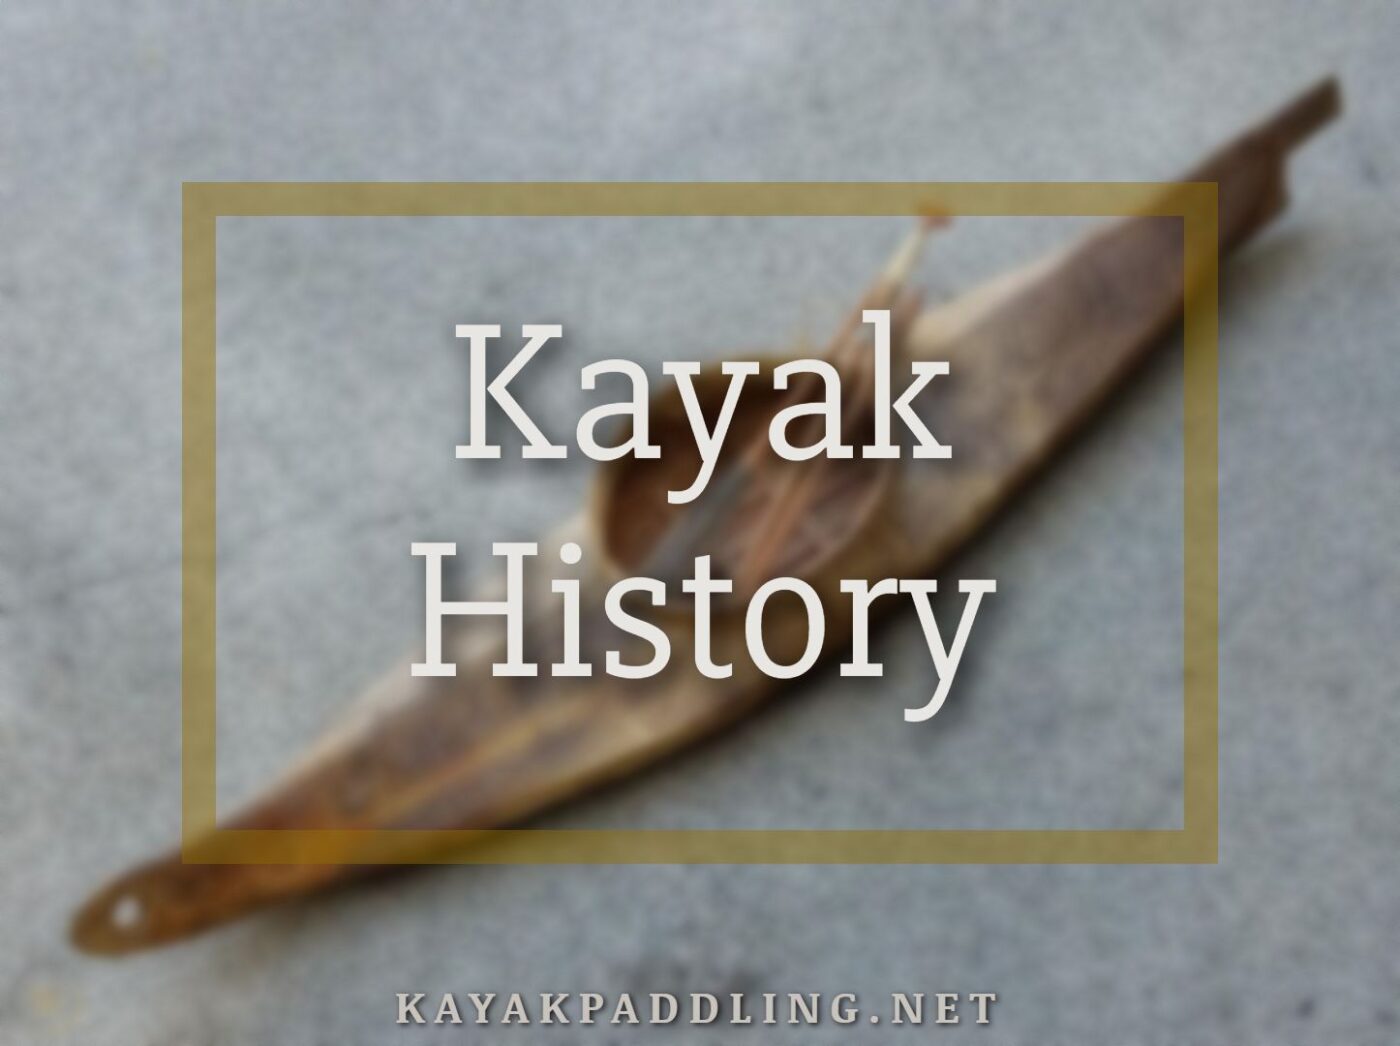 Storia del kayak